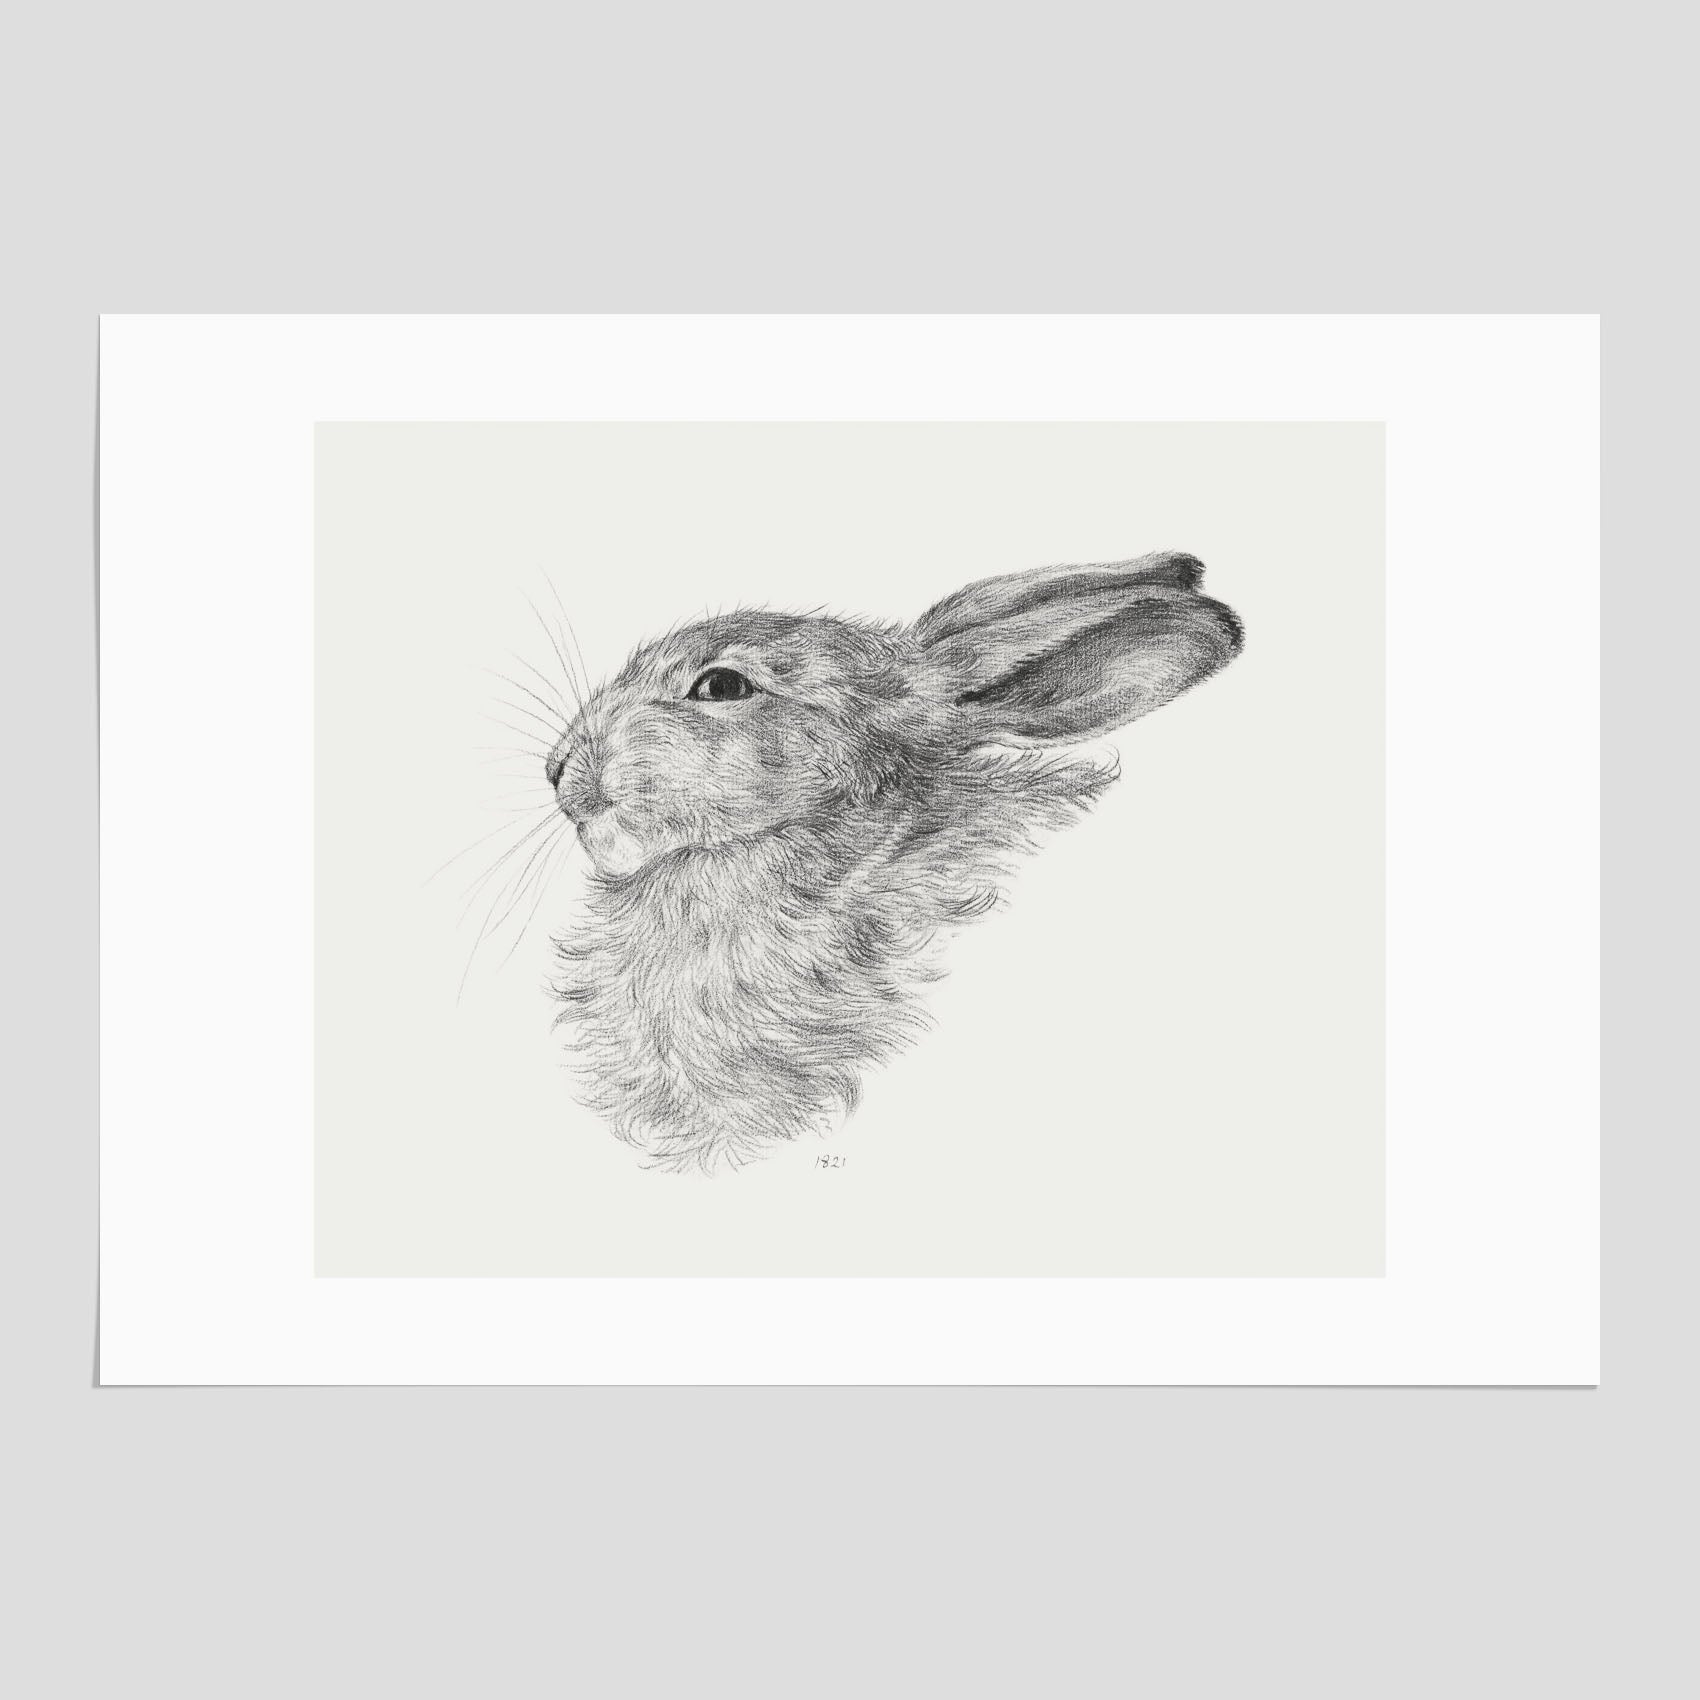 Vintageposter som föreställer en svartvit illustration av en kanin